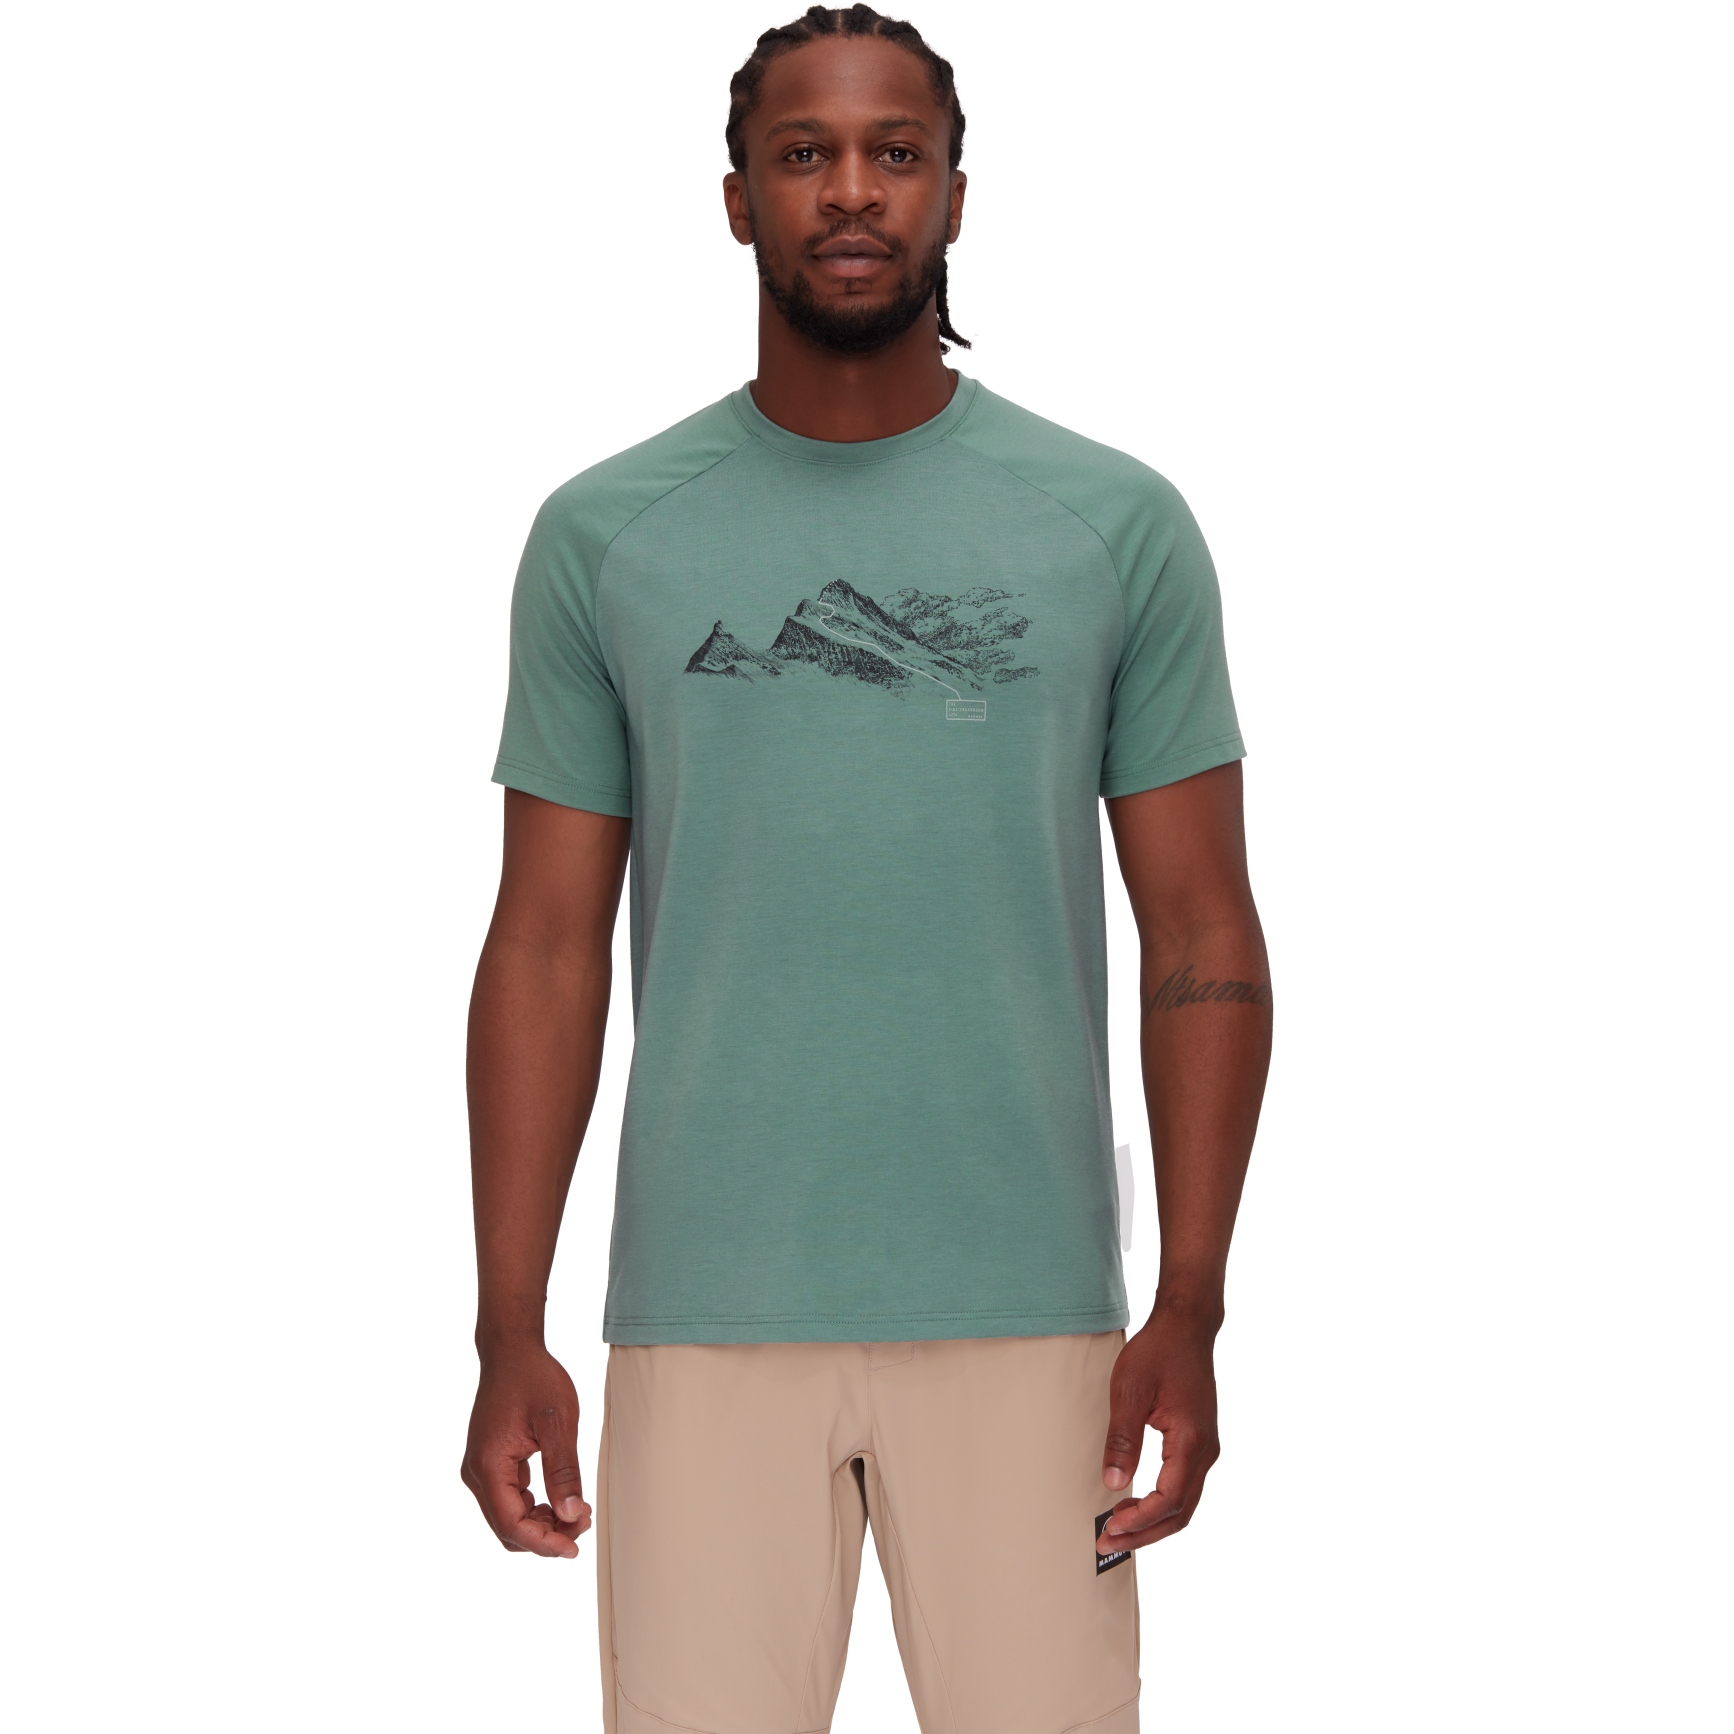 Produktbild von Mammut Mountain Finsteraarhorn T-Shirt Herren - dark jade